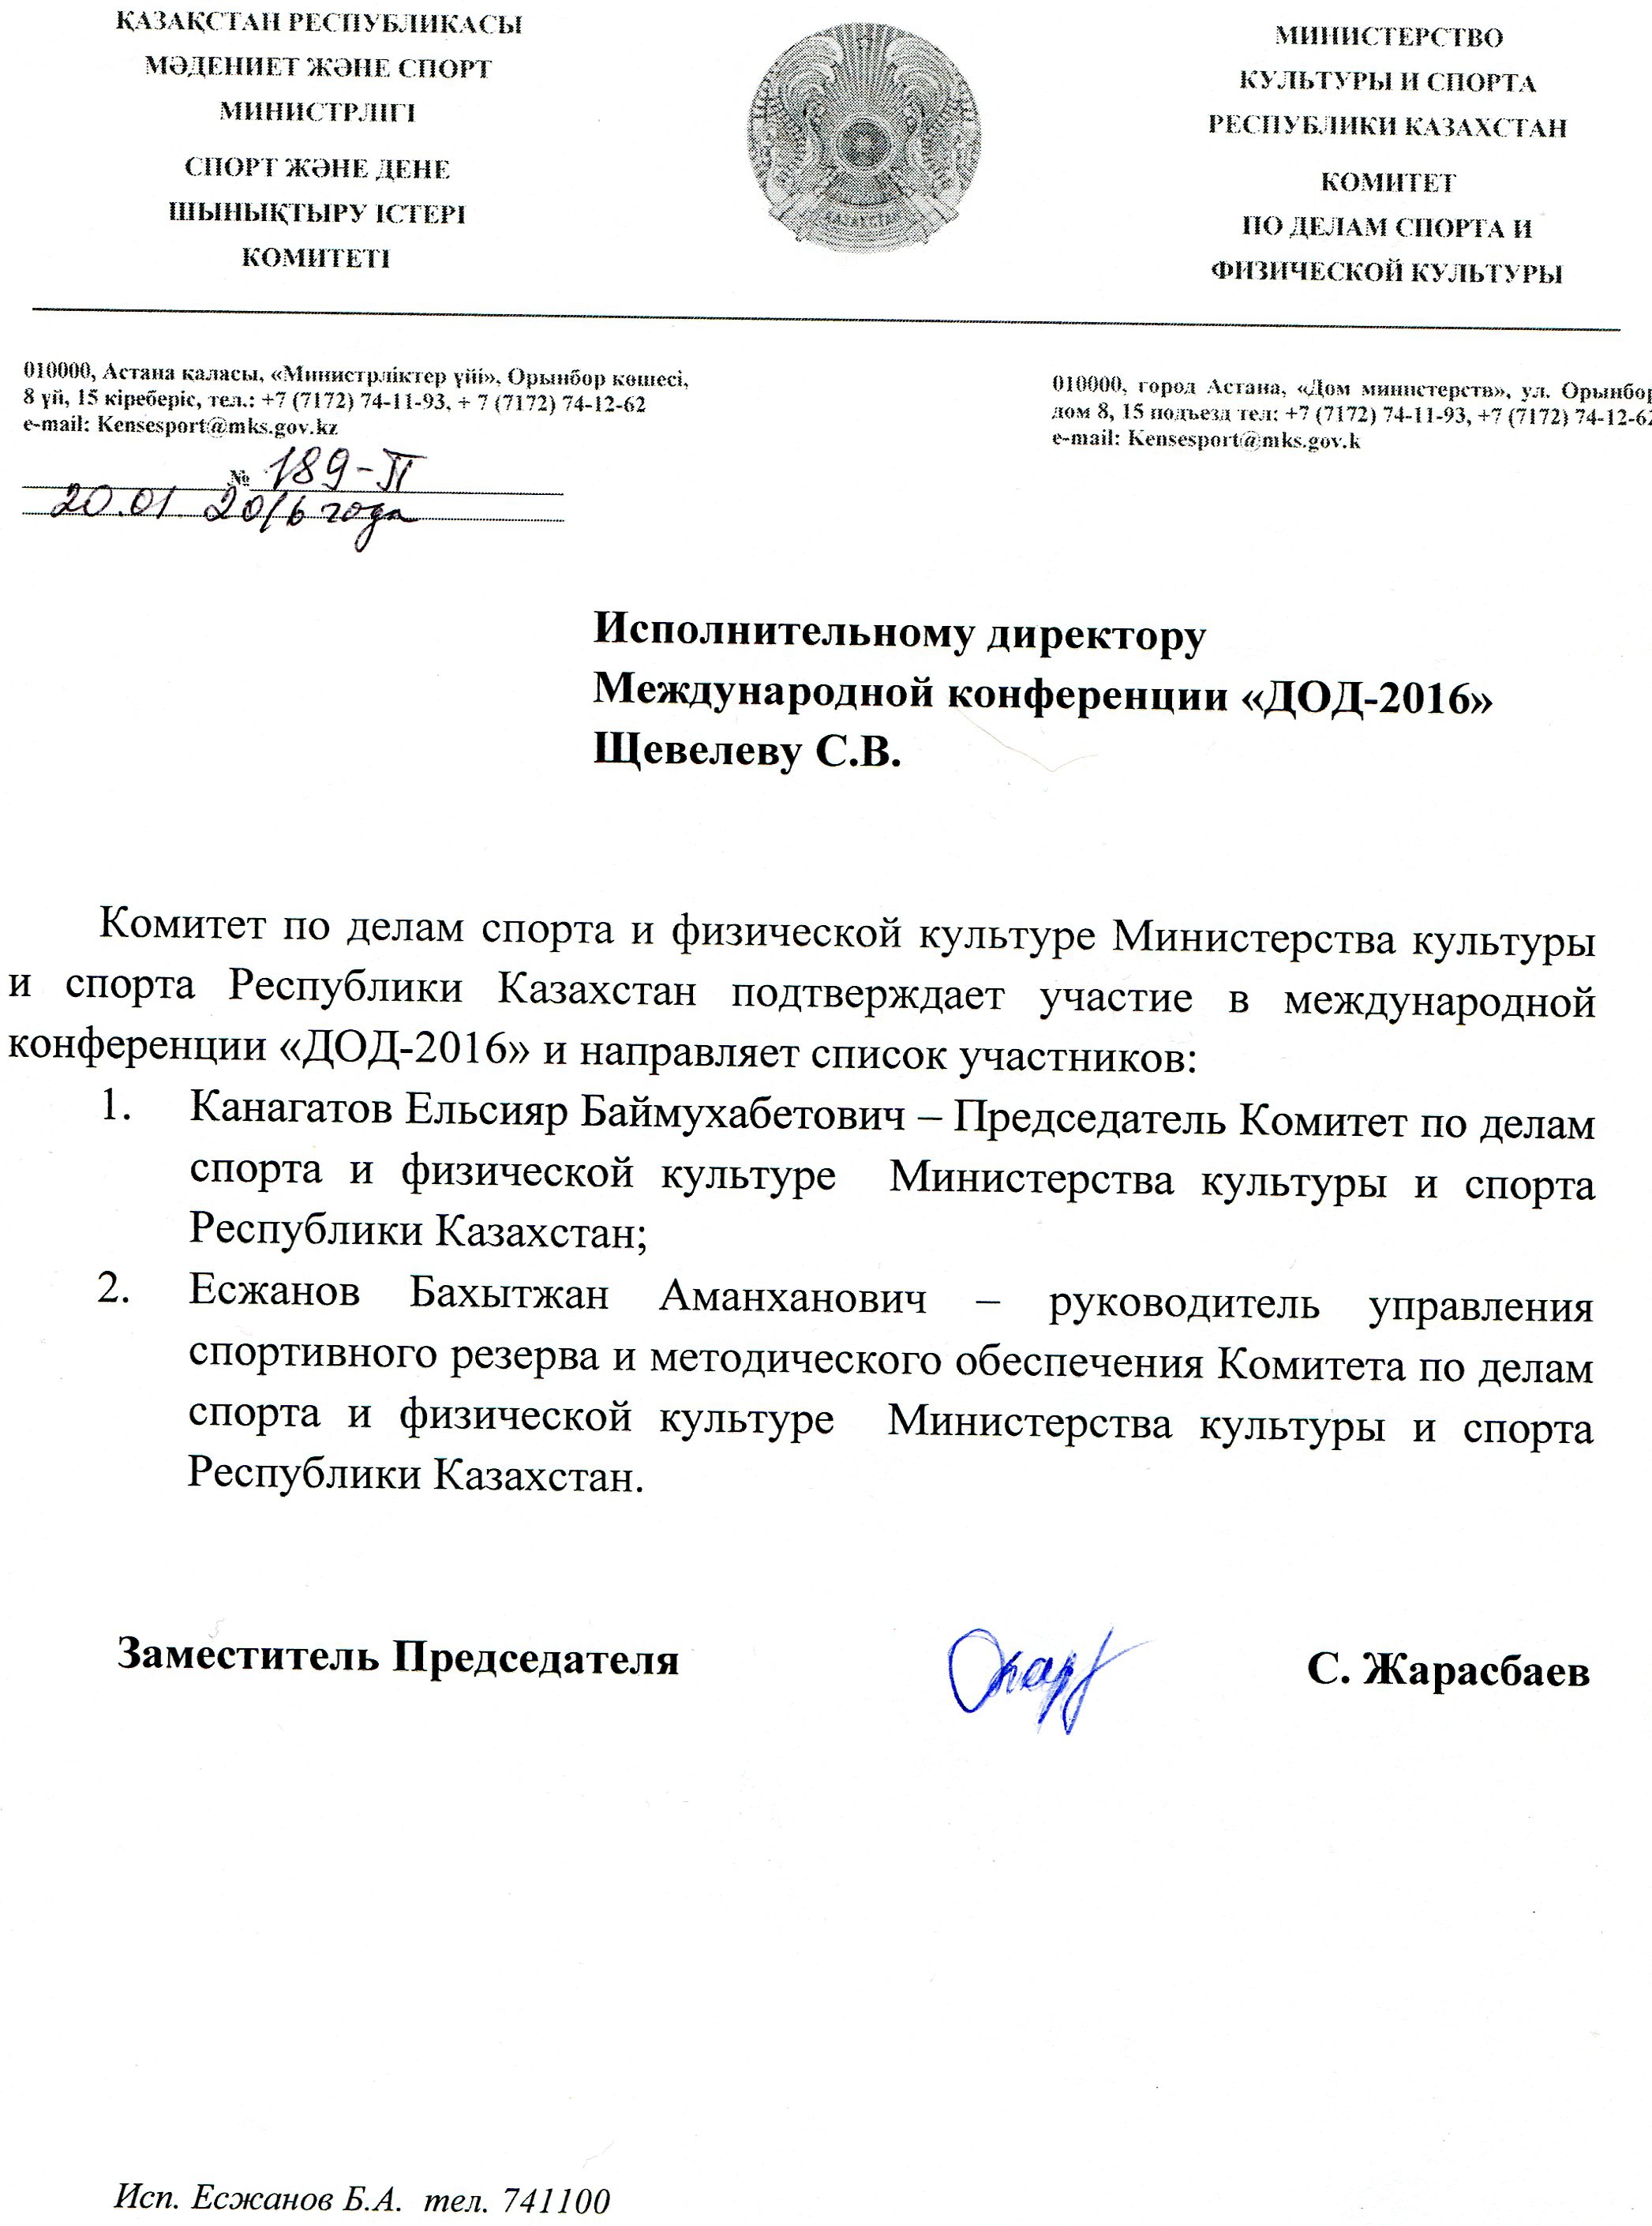 Письмо поддержки Министерства культуры и спорта Республики Казахстан